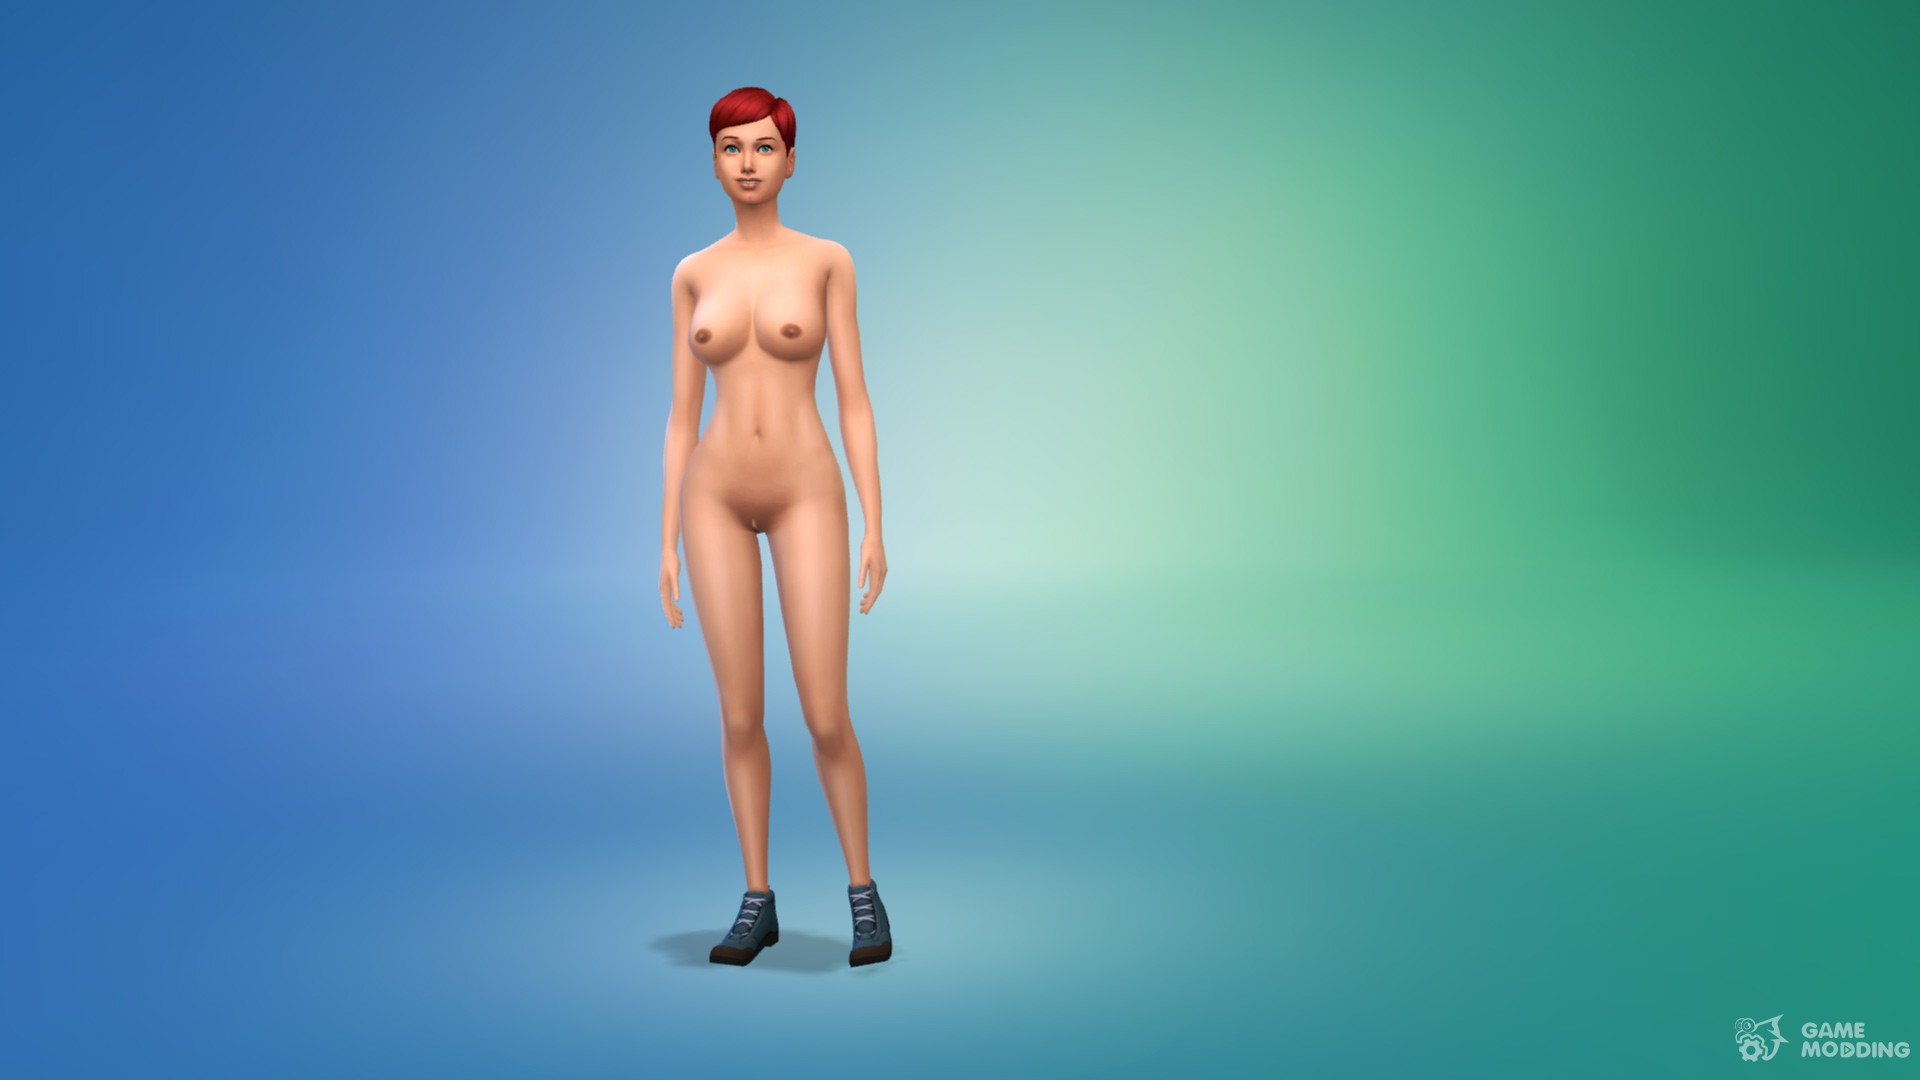 akinyemi bamidele add the sims naked mod photo